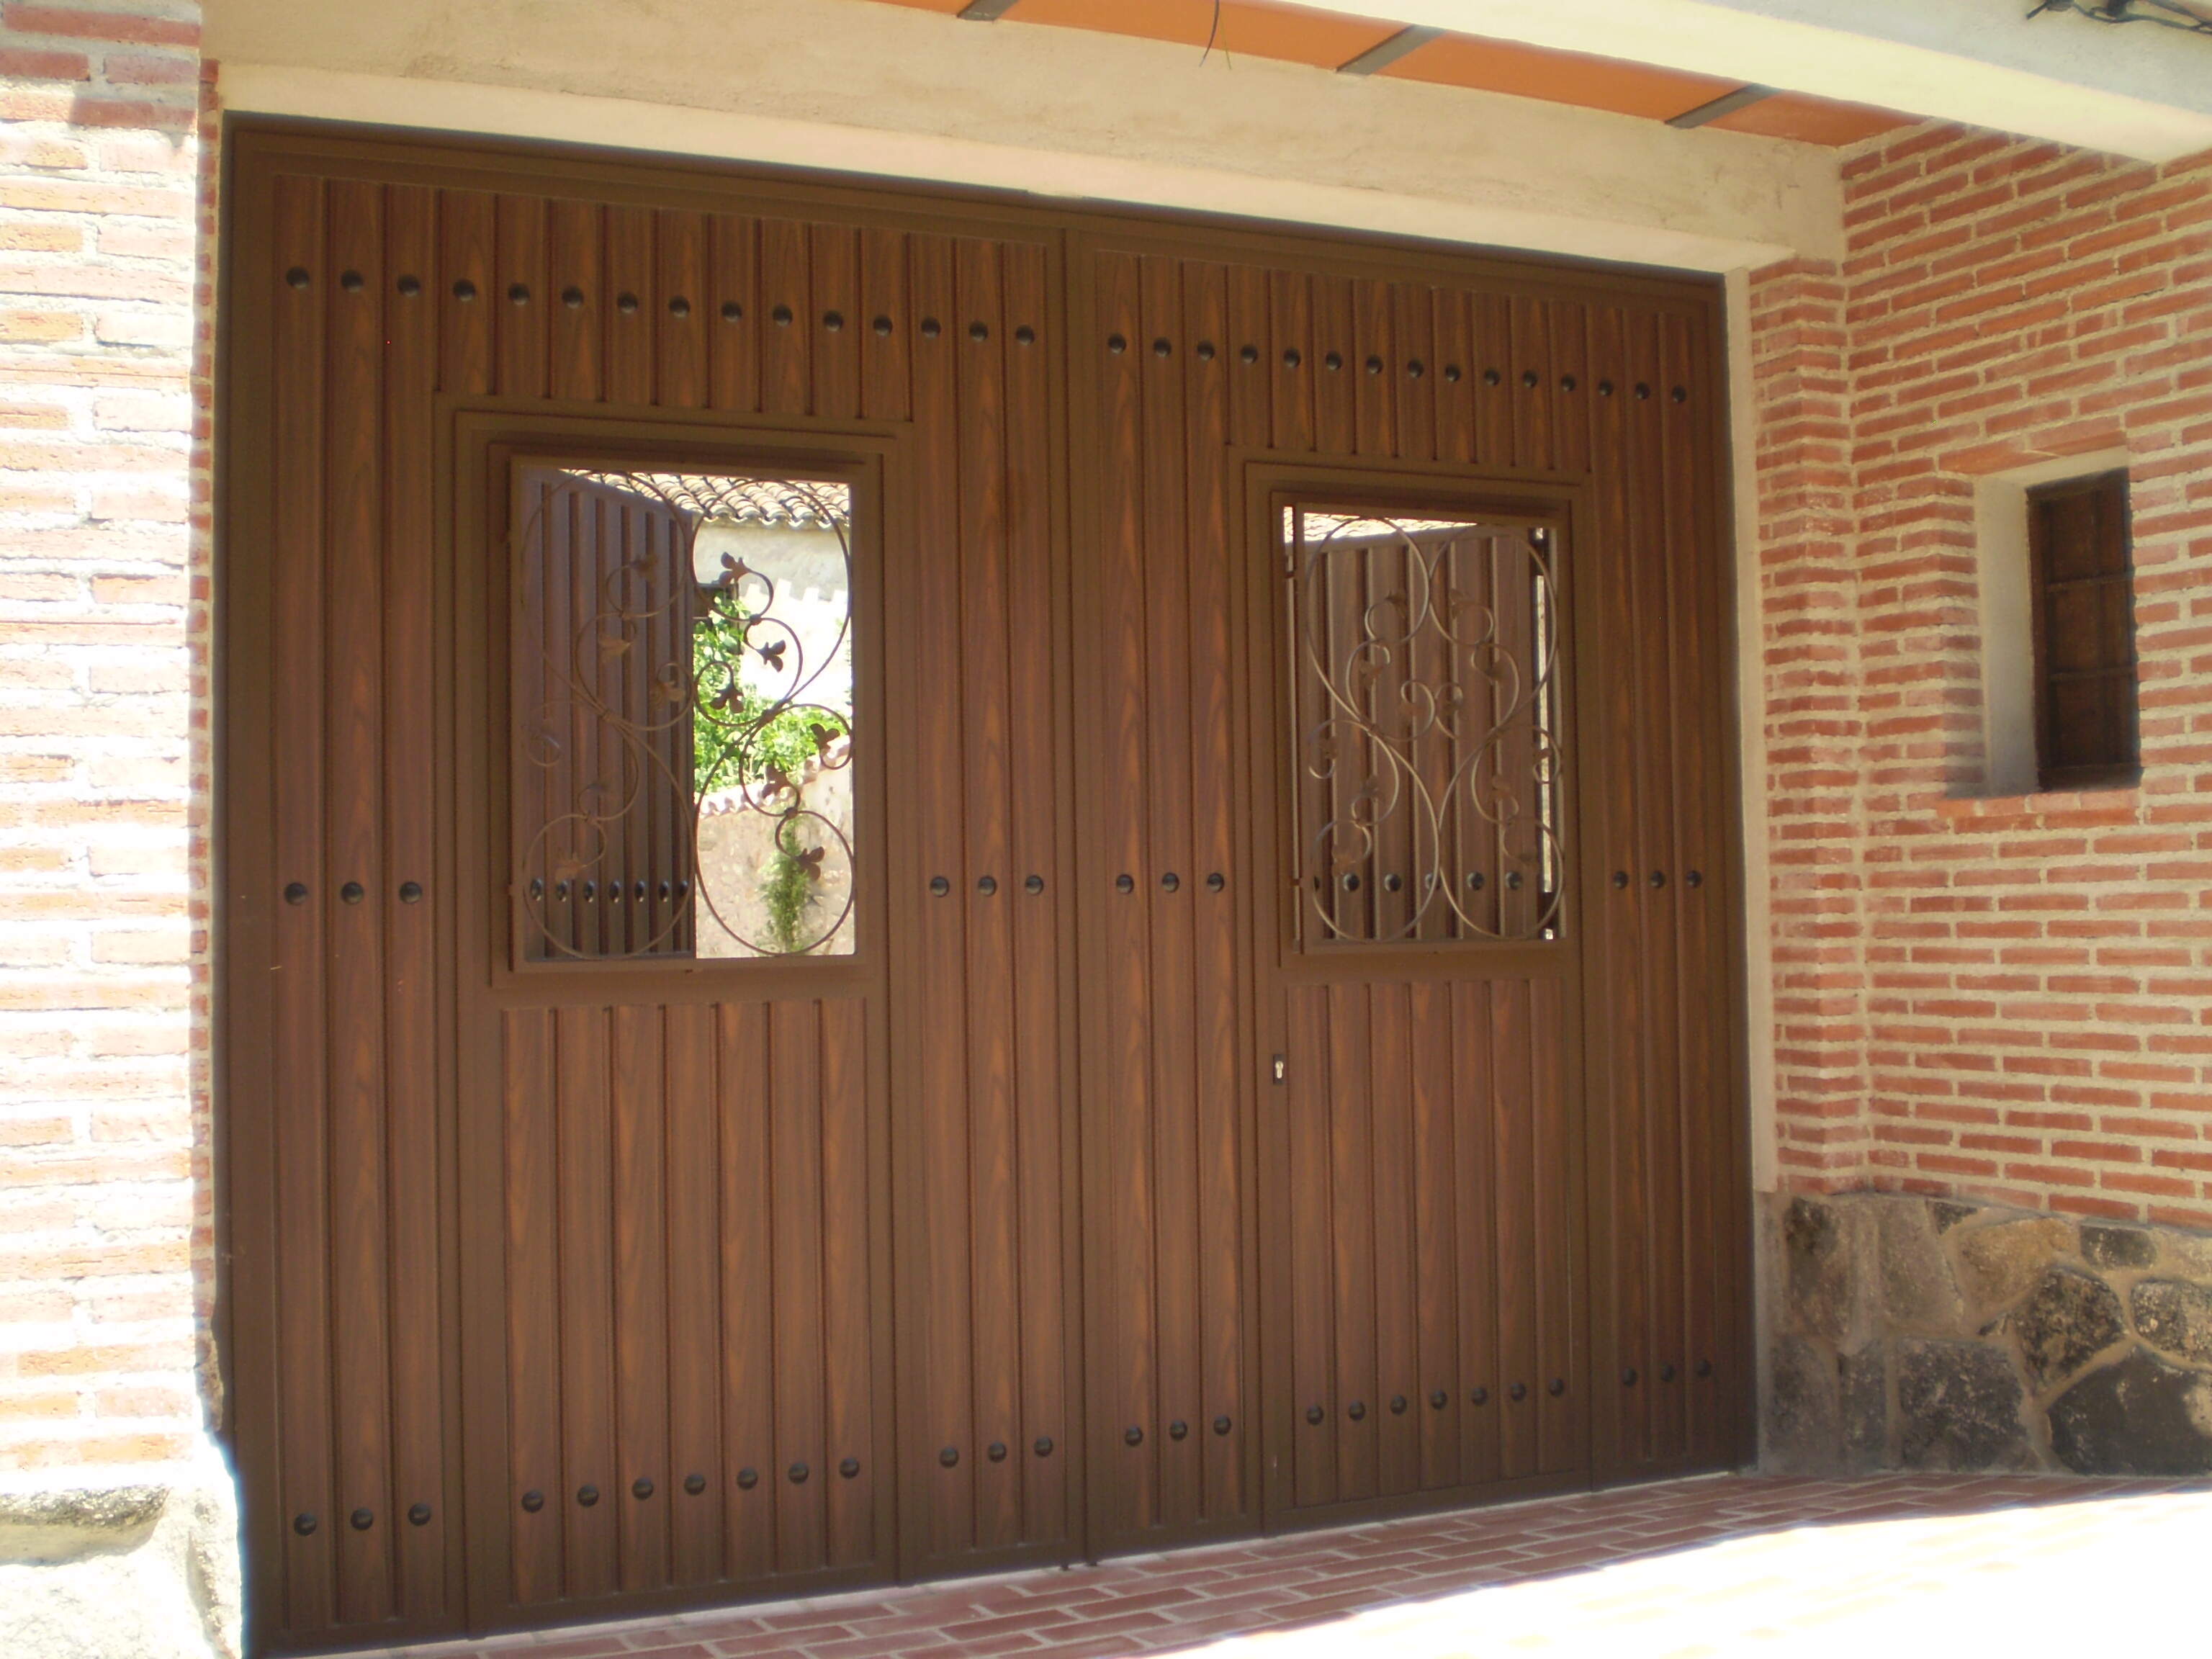 Puerta de hierro imitación madera exterior, para paso de vehículos.